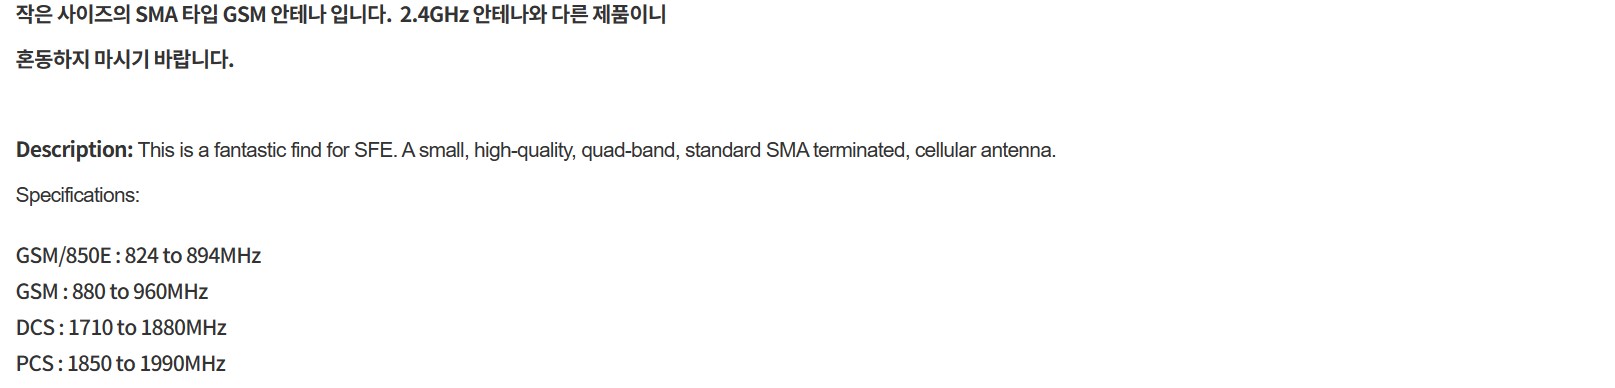 소형 GSM 안테나 SMA 타입 (Quad-band Cellular Duck Antenna SMA) ((GSM850E, DCS, PCS Antenna 850-1900MHz)